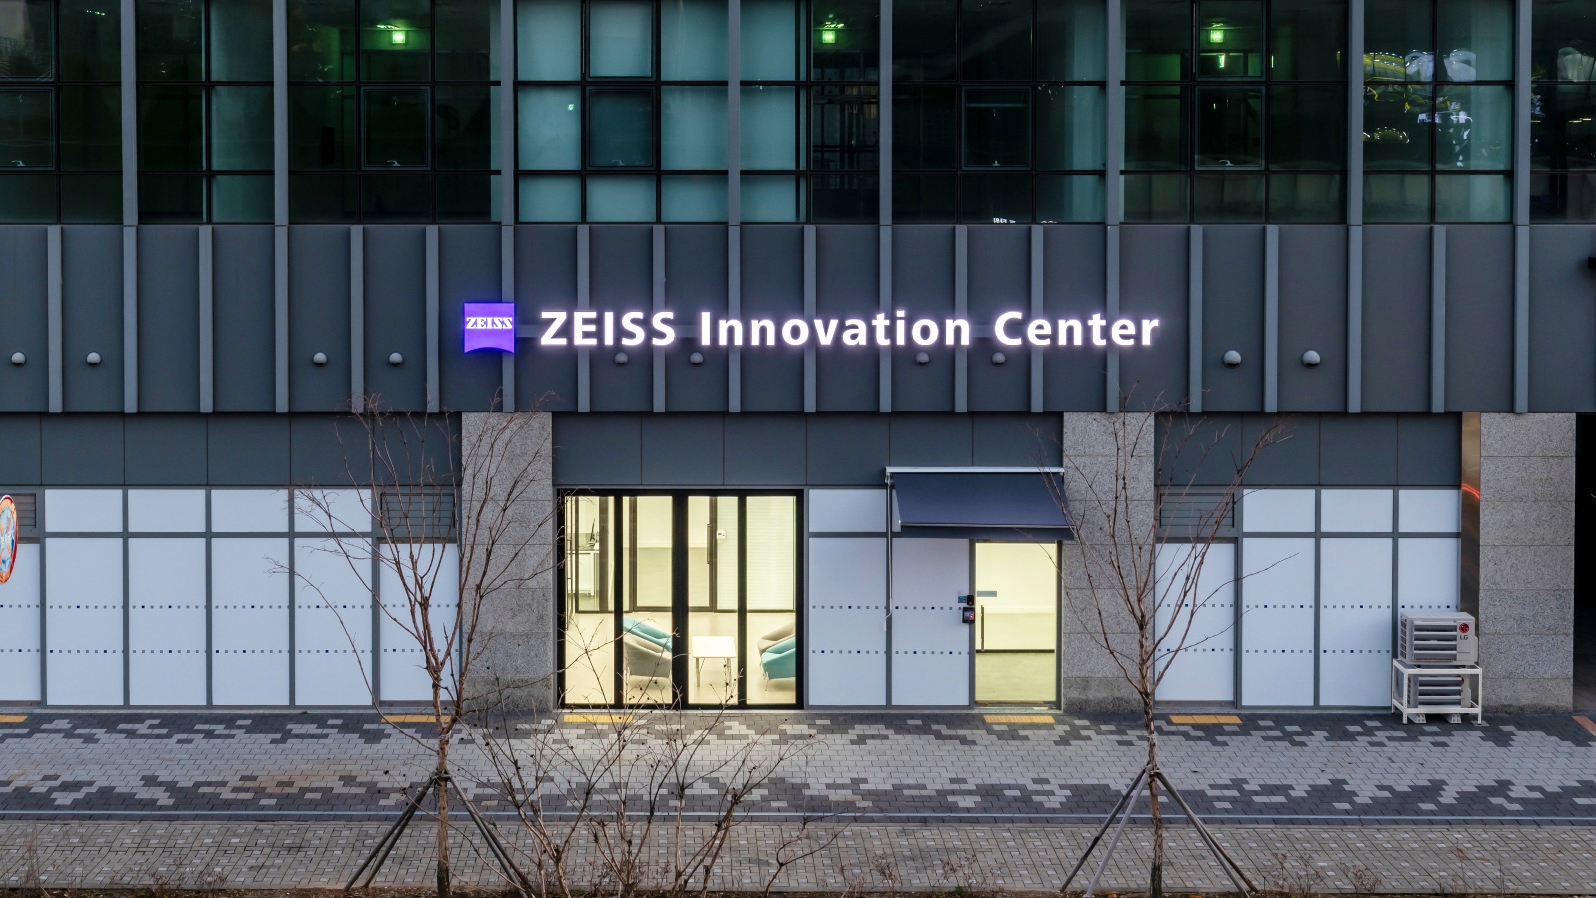 ZEISS Korea Innovation Center - 건물